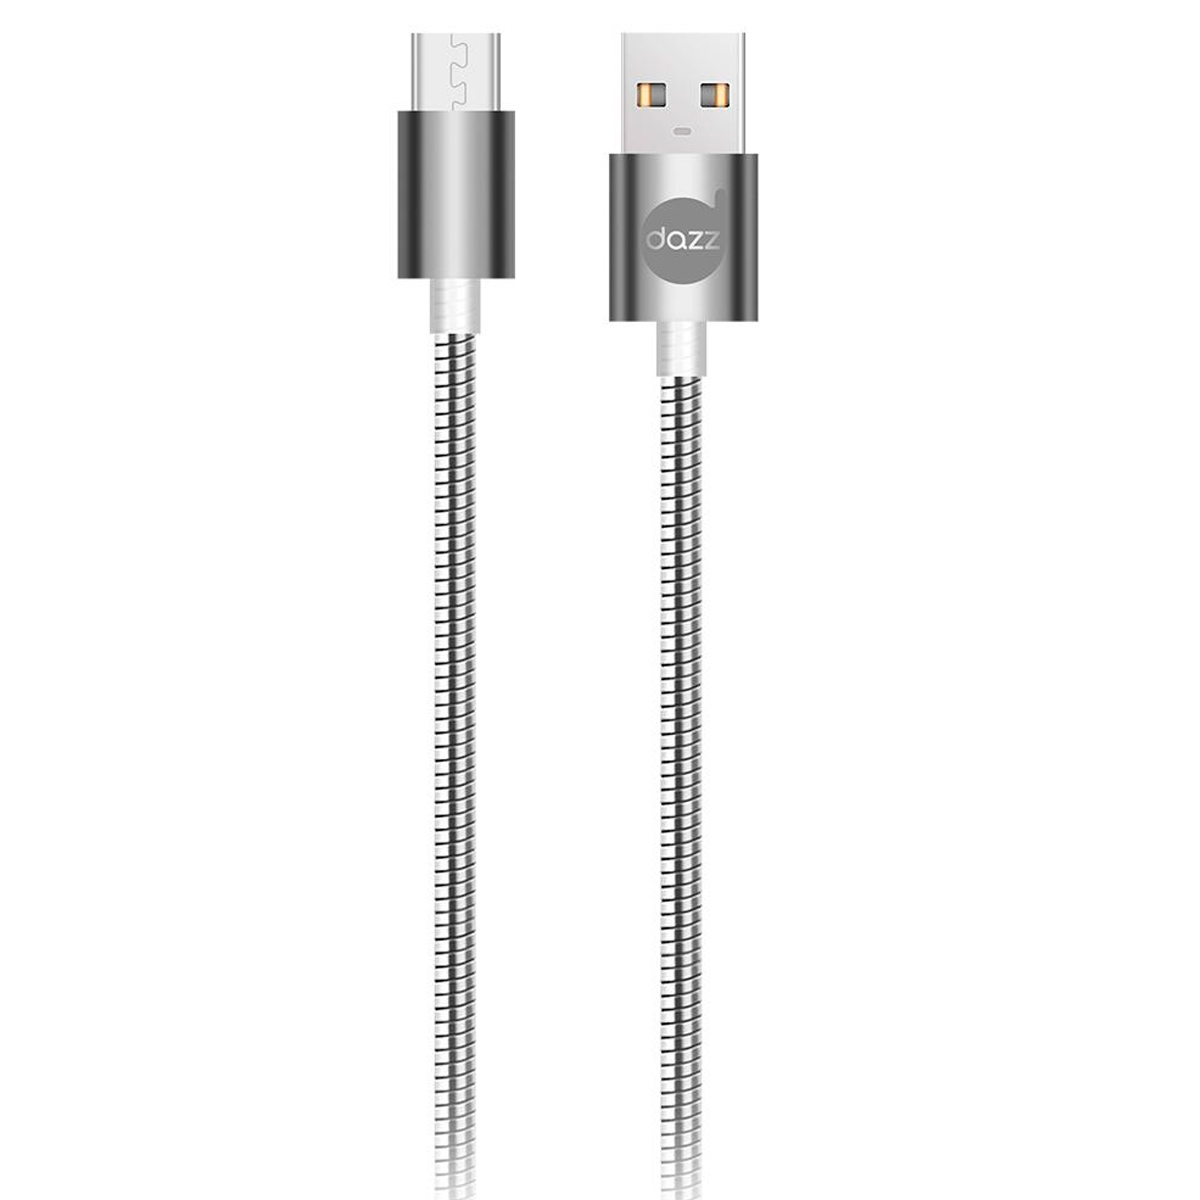 Cabo Micro USB para USB - 90cm - Cinza - Metal Entrelaçado - Dazz 6013667